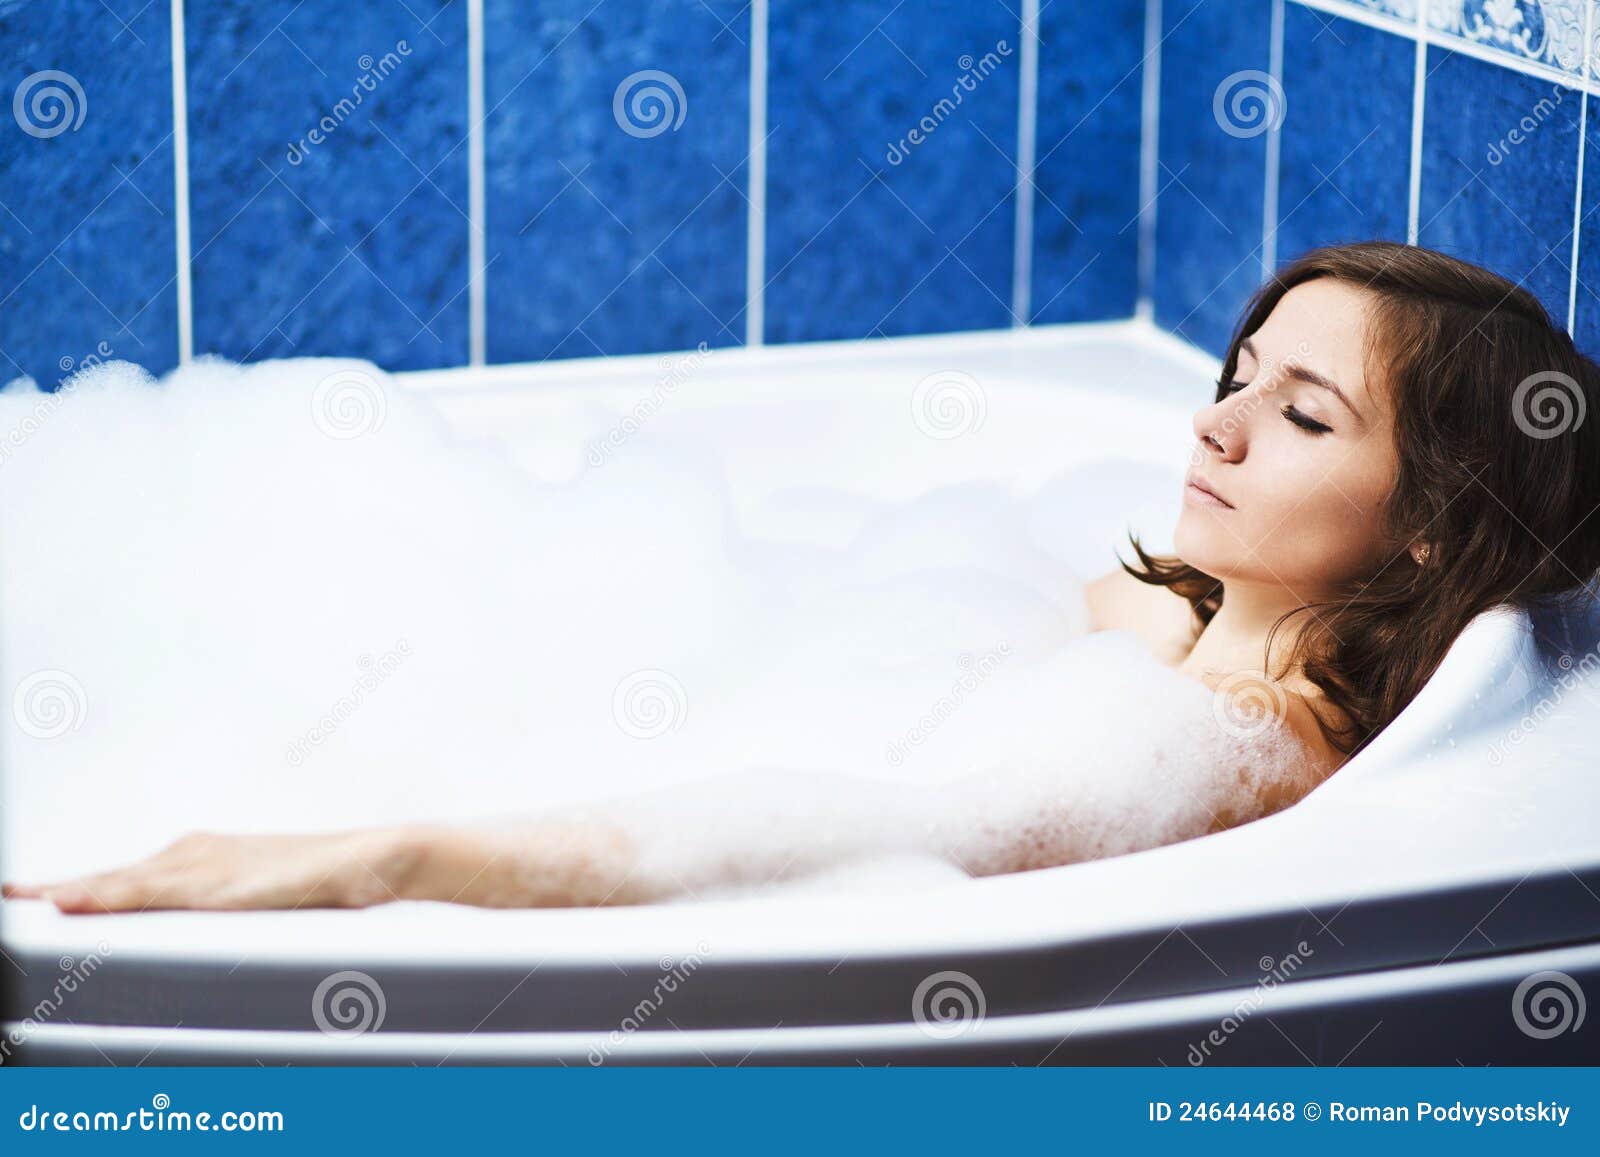 Муж жена ванна видео. Теплая ванна. Холодная ванна. Расслабленная женщина в ванной. Симпатичная девушка расслабляется в ванной.